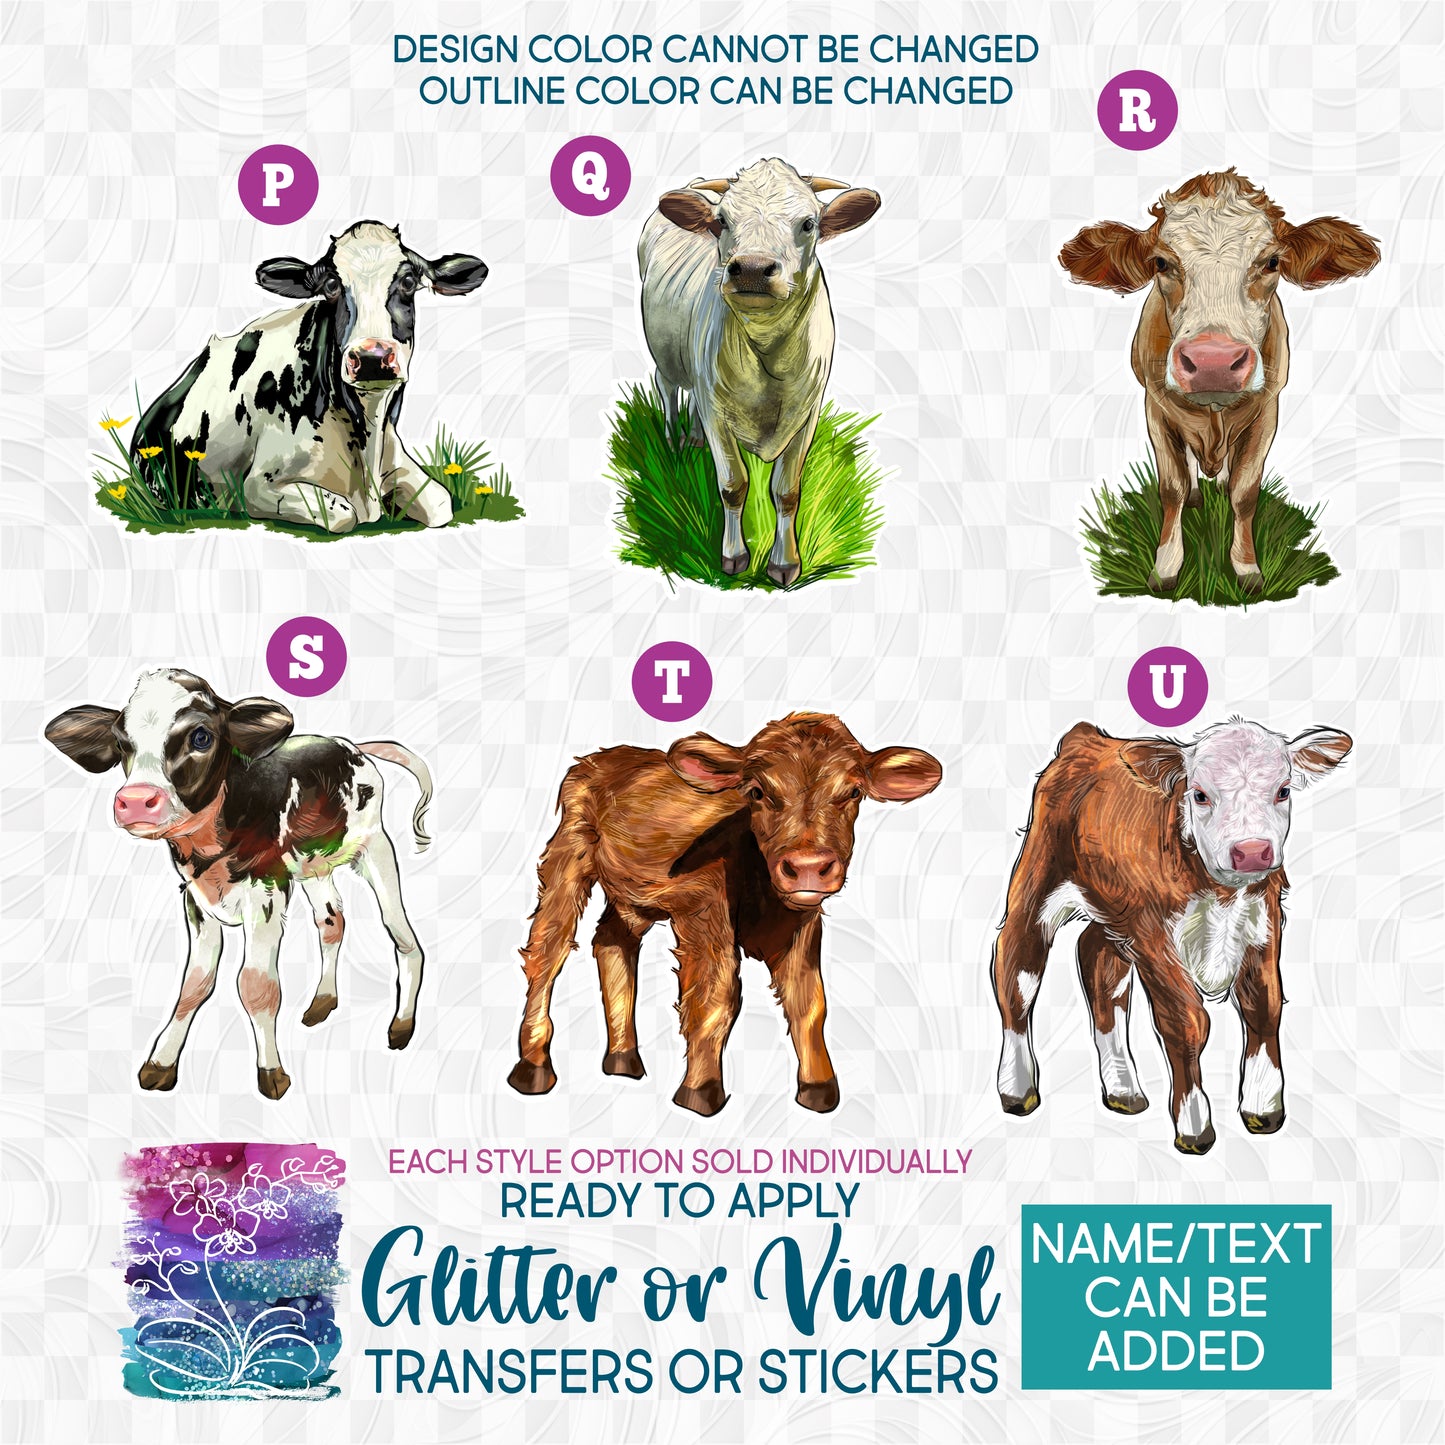 (s098-5) Cow Cows Calf Heifer Bull Cattle Glitter or Vinyl Iron-On Transfer or Sticker